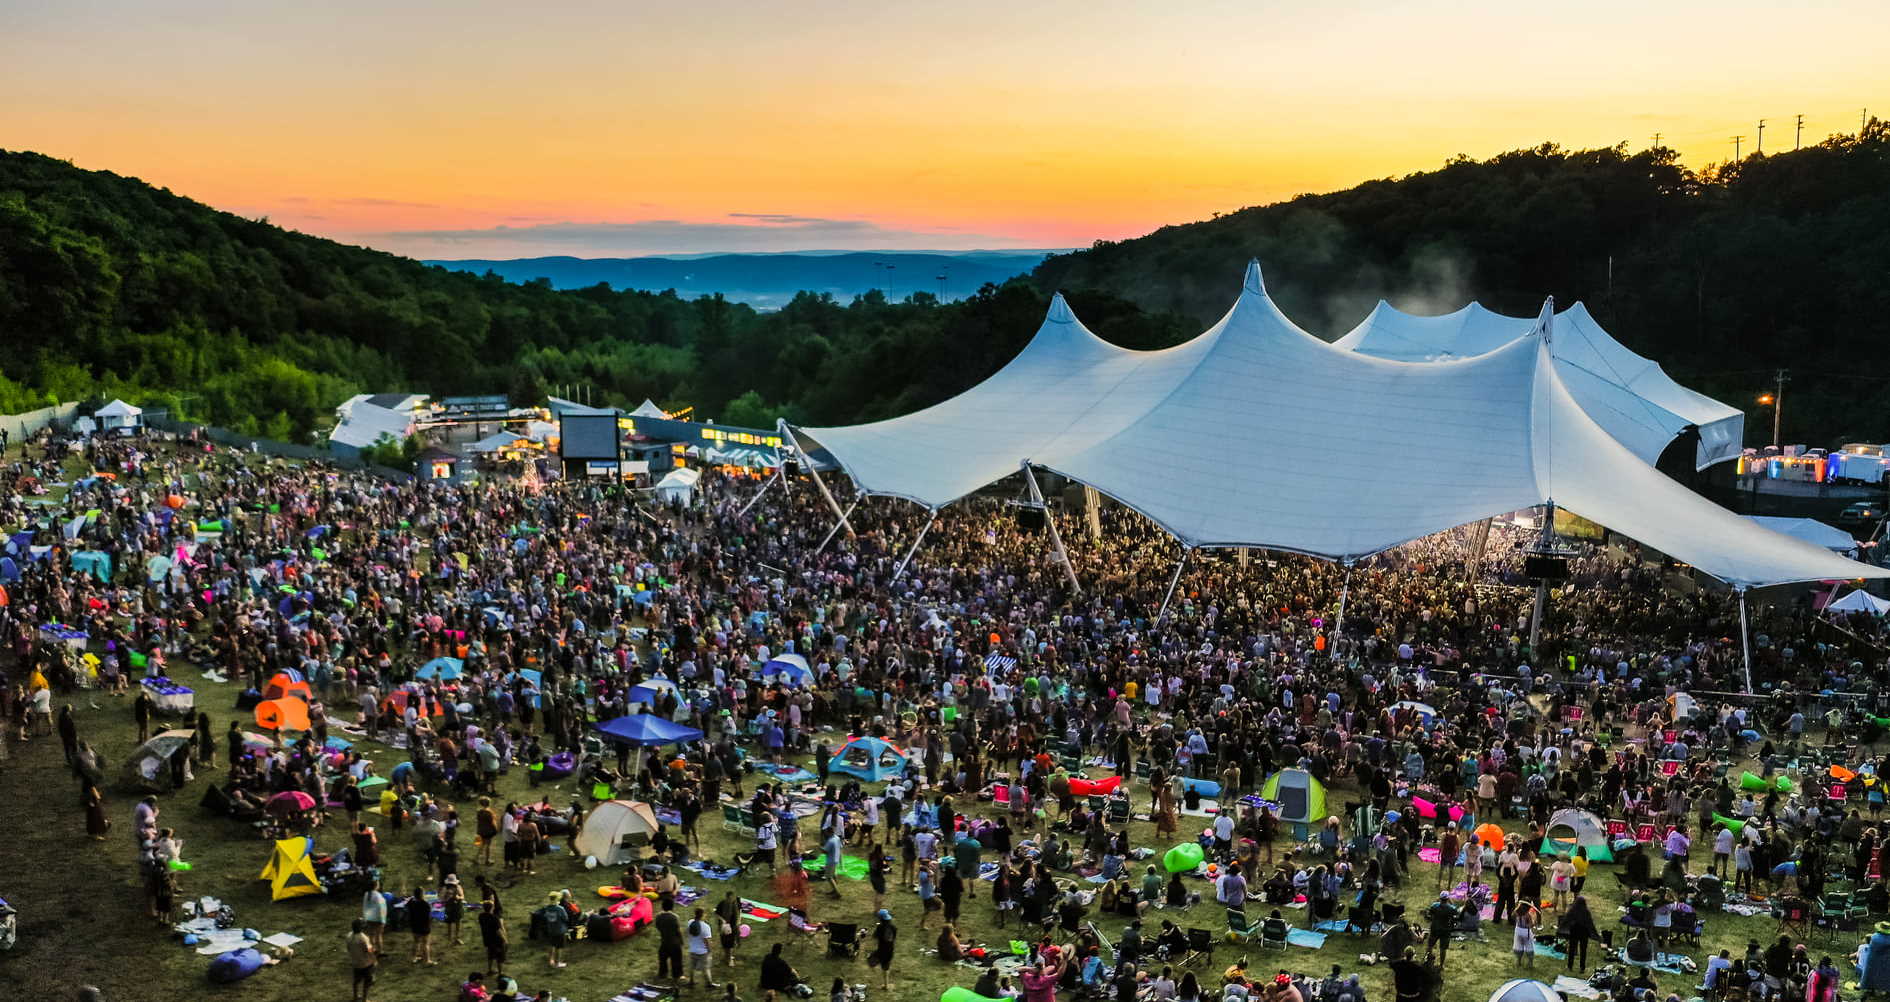 The Peach Music Festival 2022